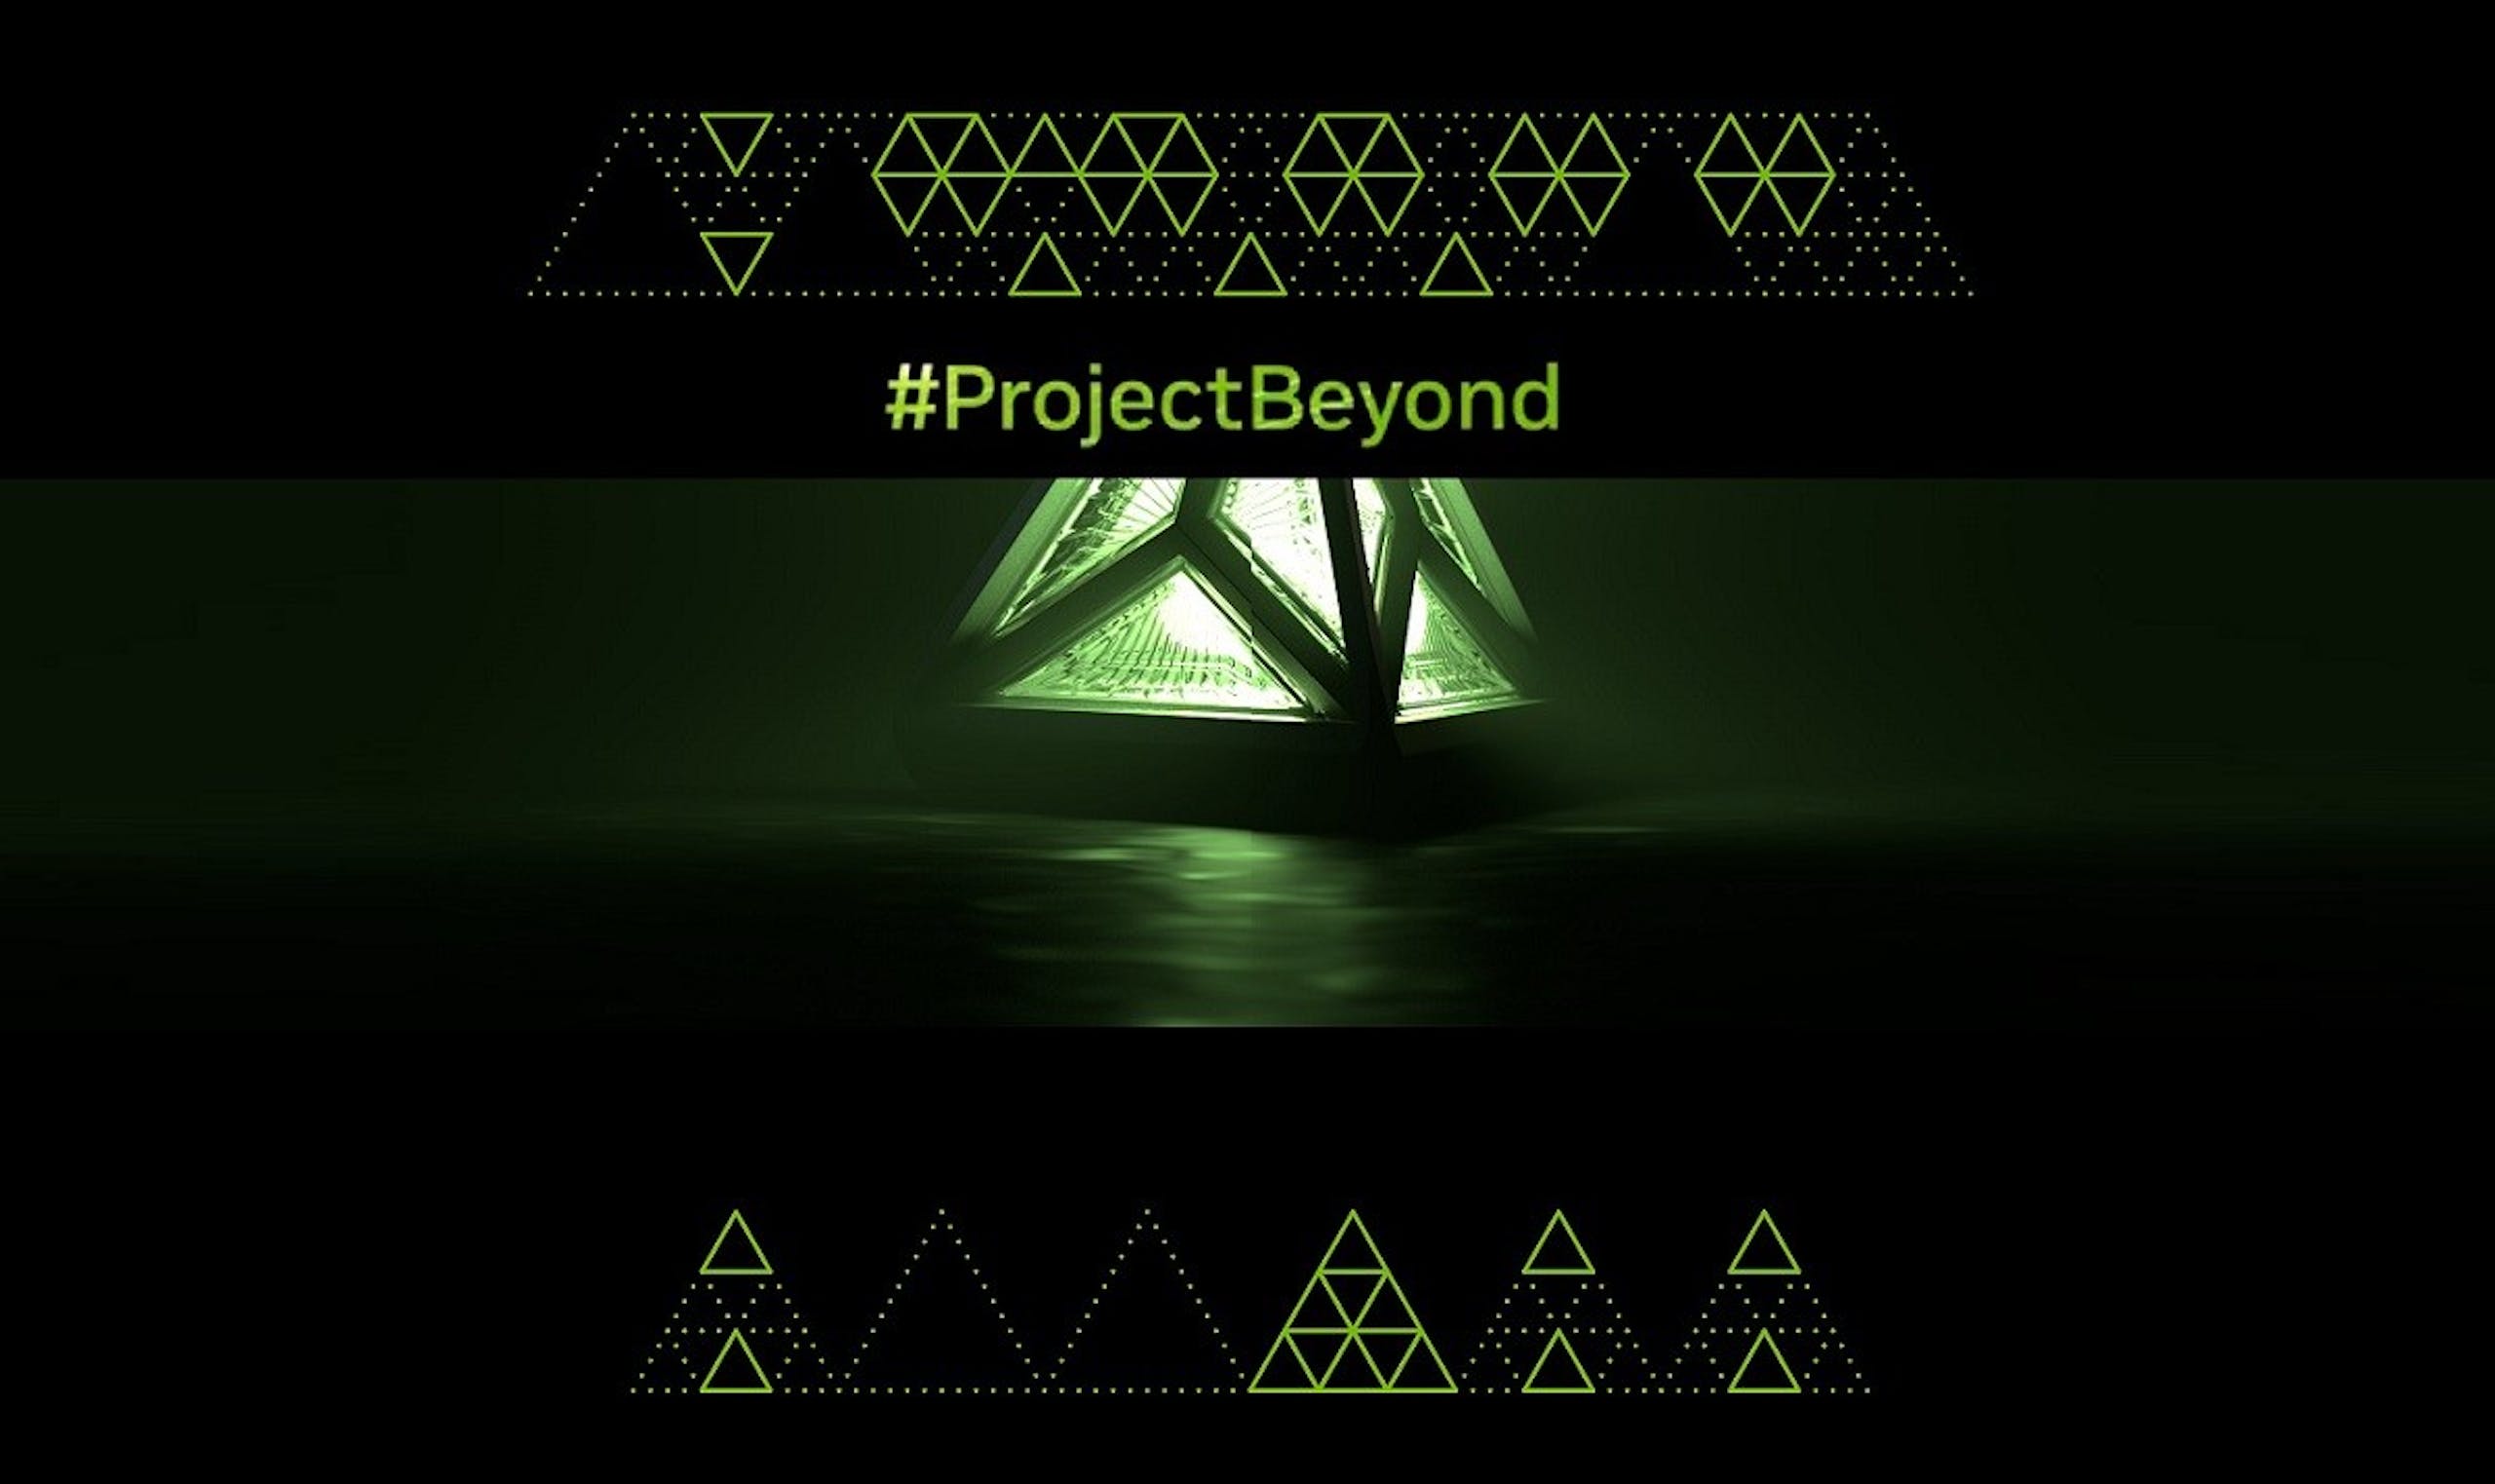 照片中提到了Δ Δ Δ、#ProjectBeyond，跟扎拉之家有關，包含了燈光、平面設計、字形、設計、三角形